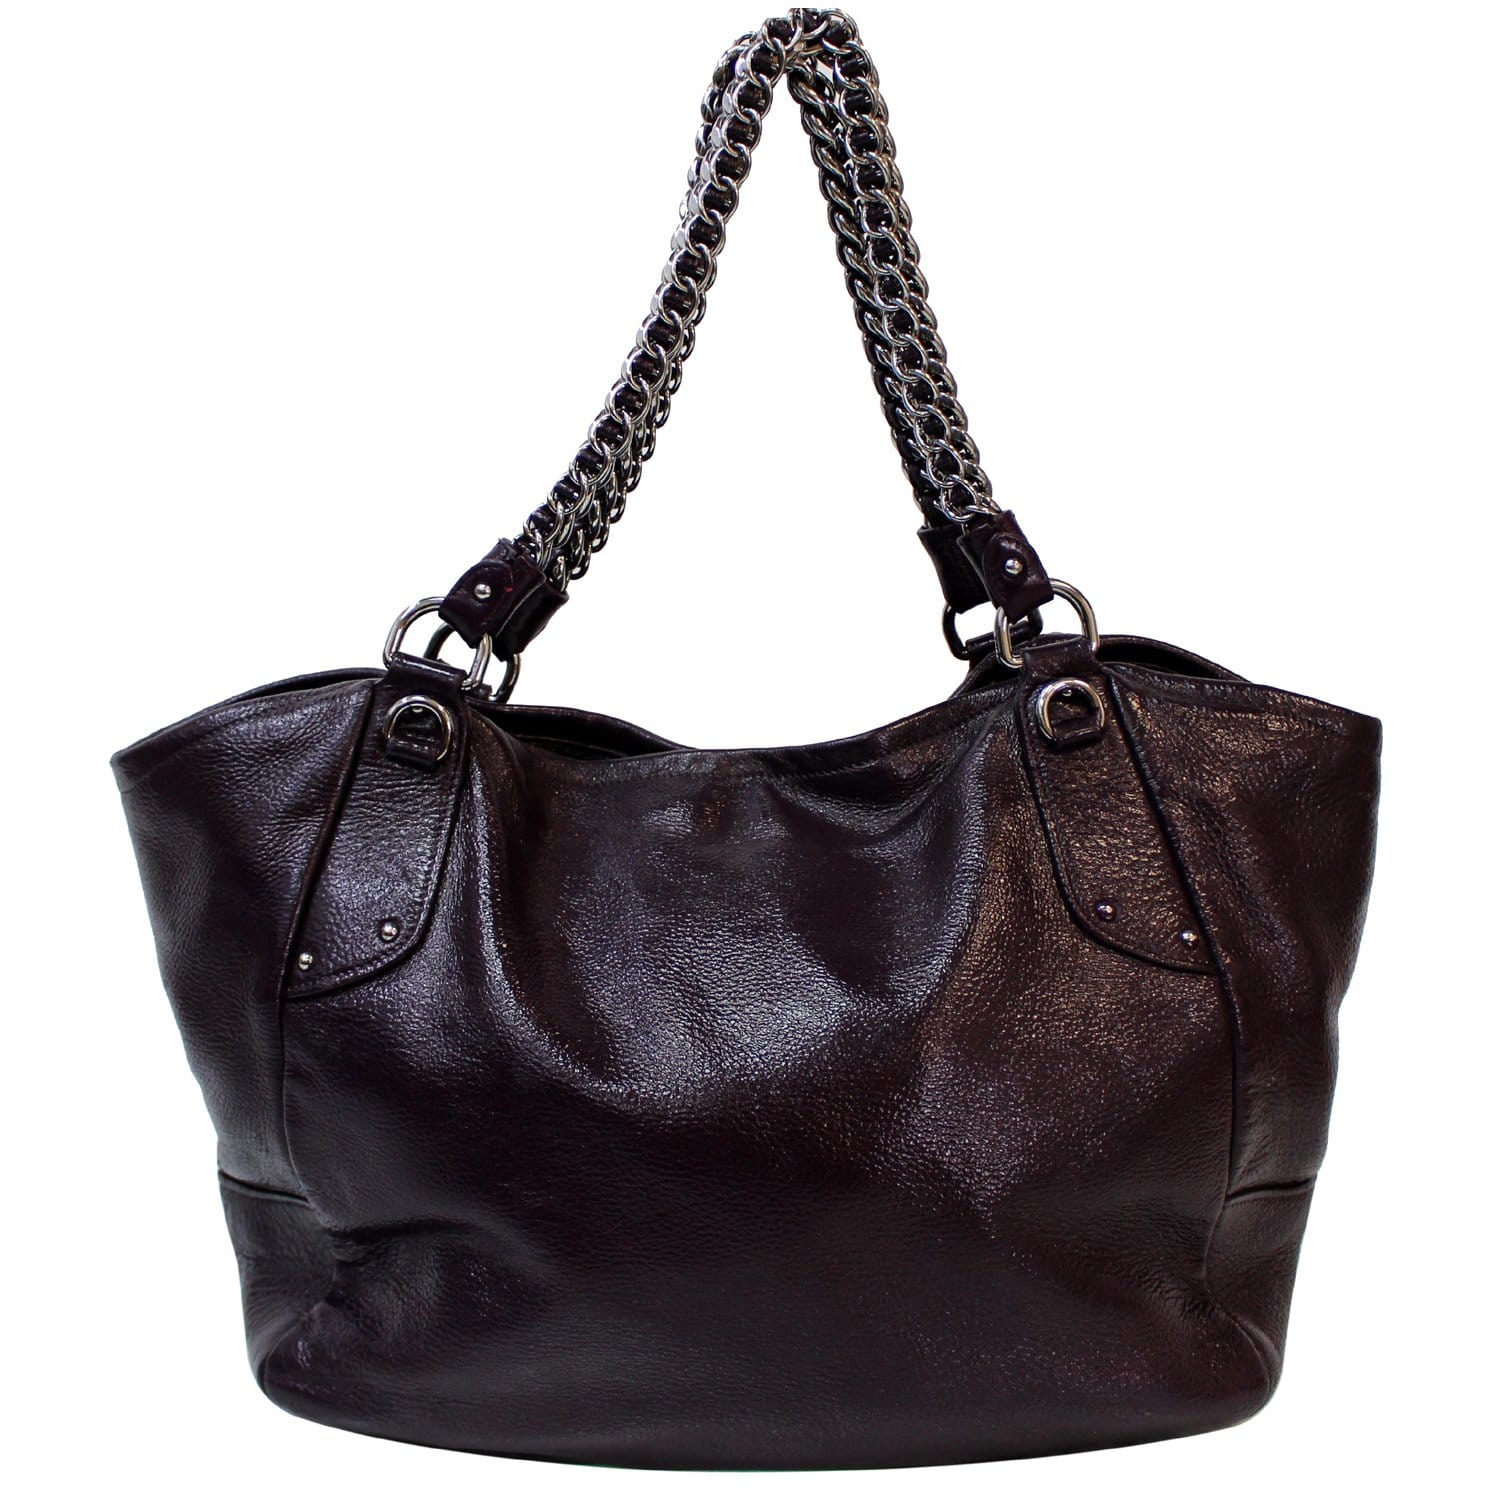 Prada - Cervo Lux Chain Shoulder Bag